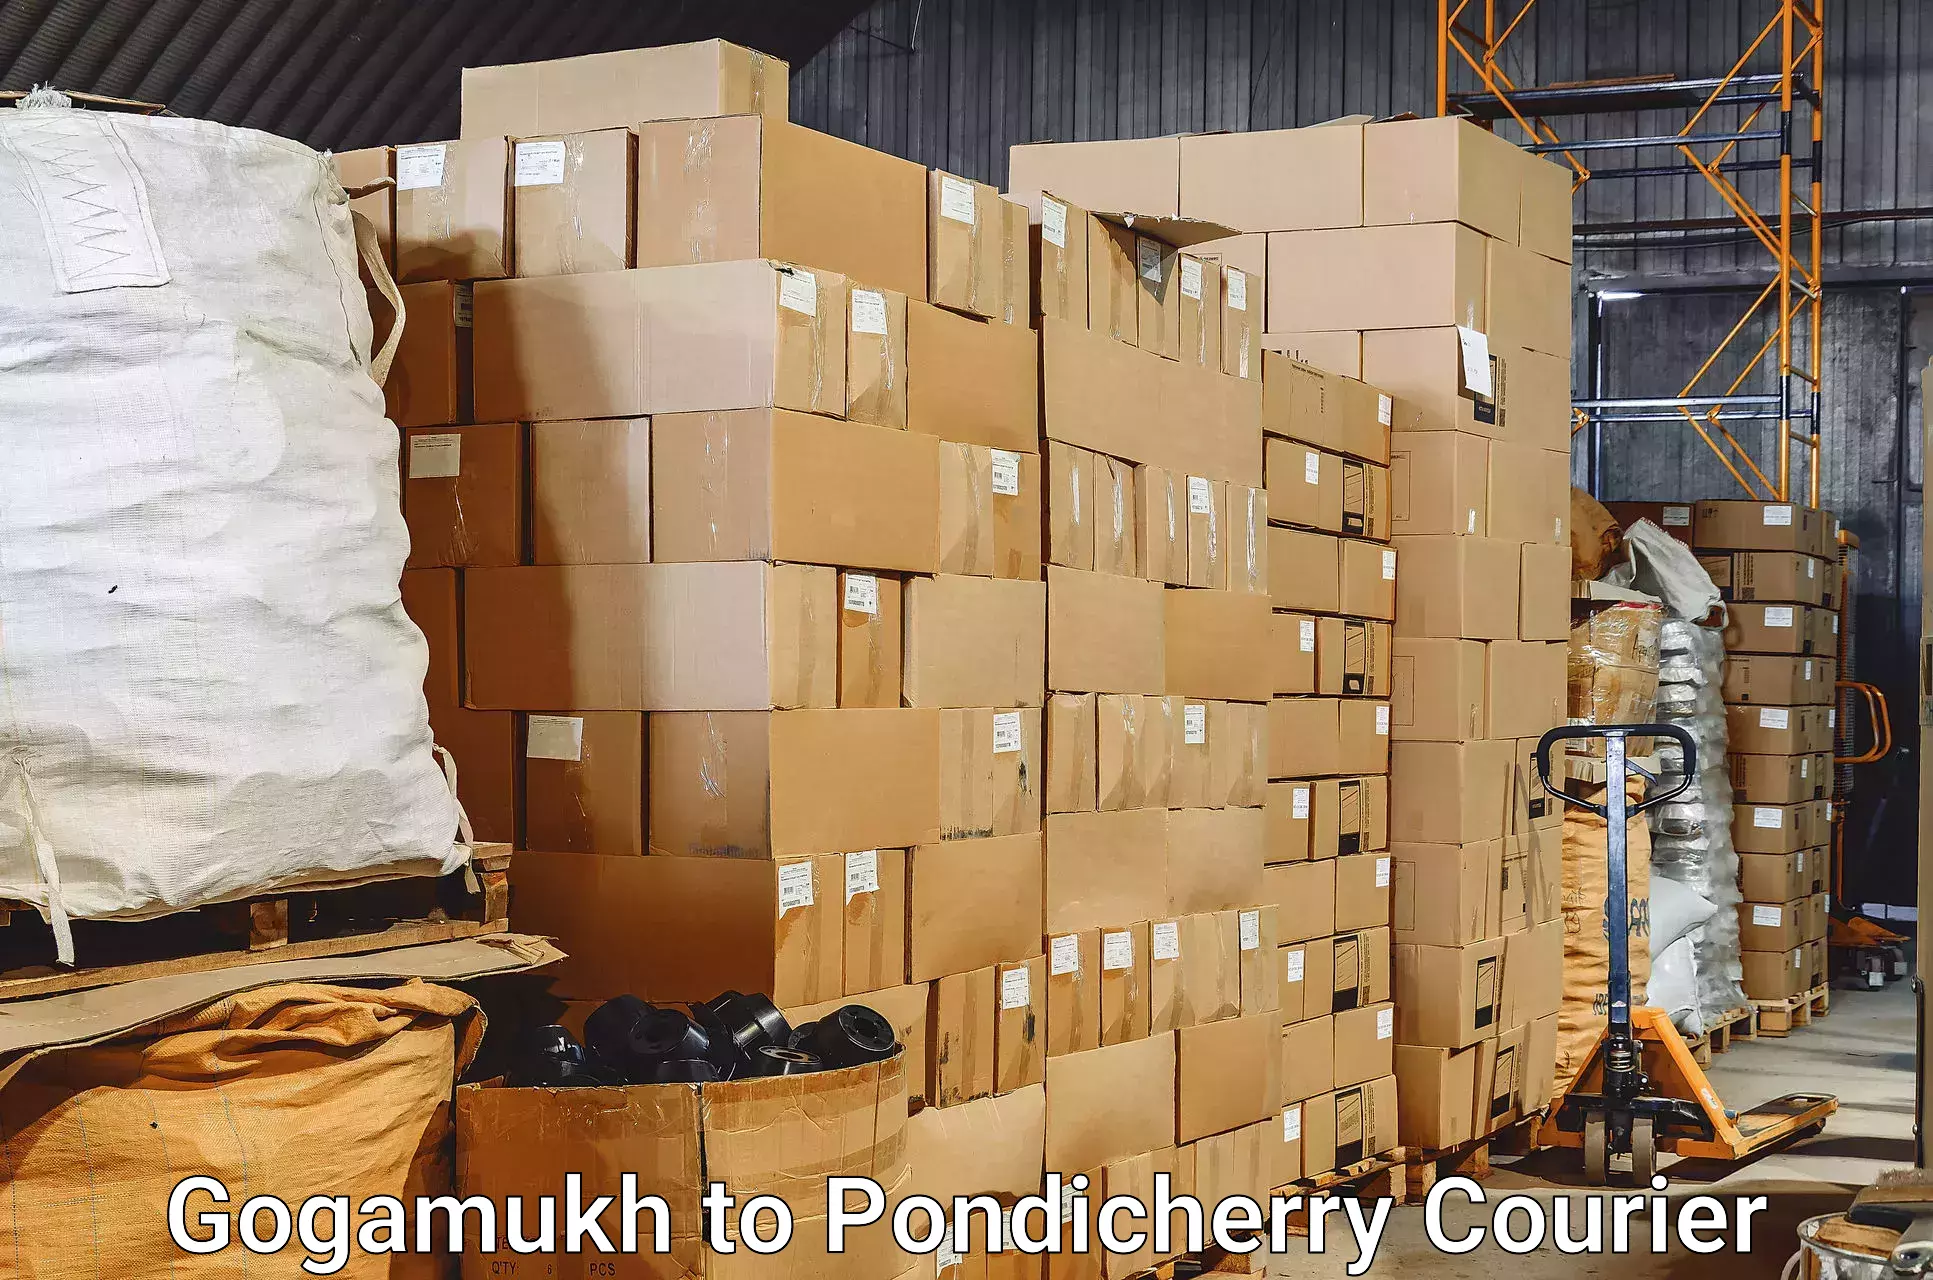 Baggage shipping experts Gogamukh to Pondicherry University